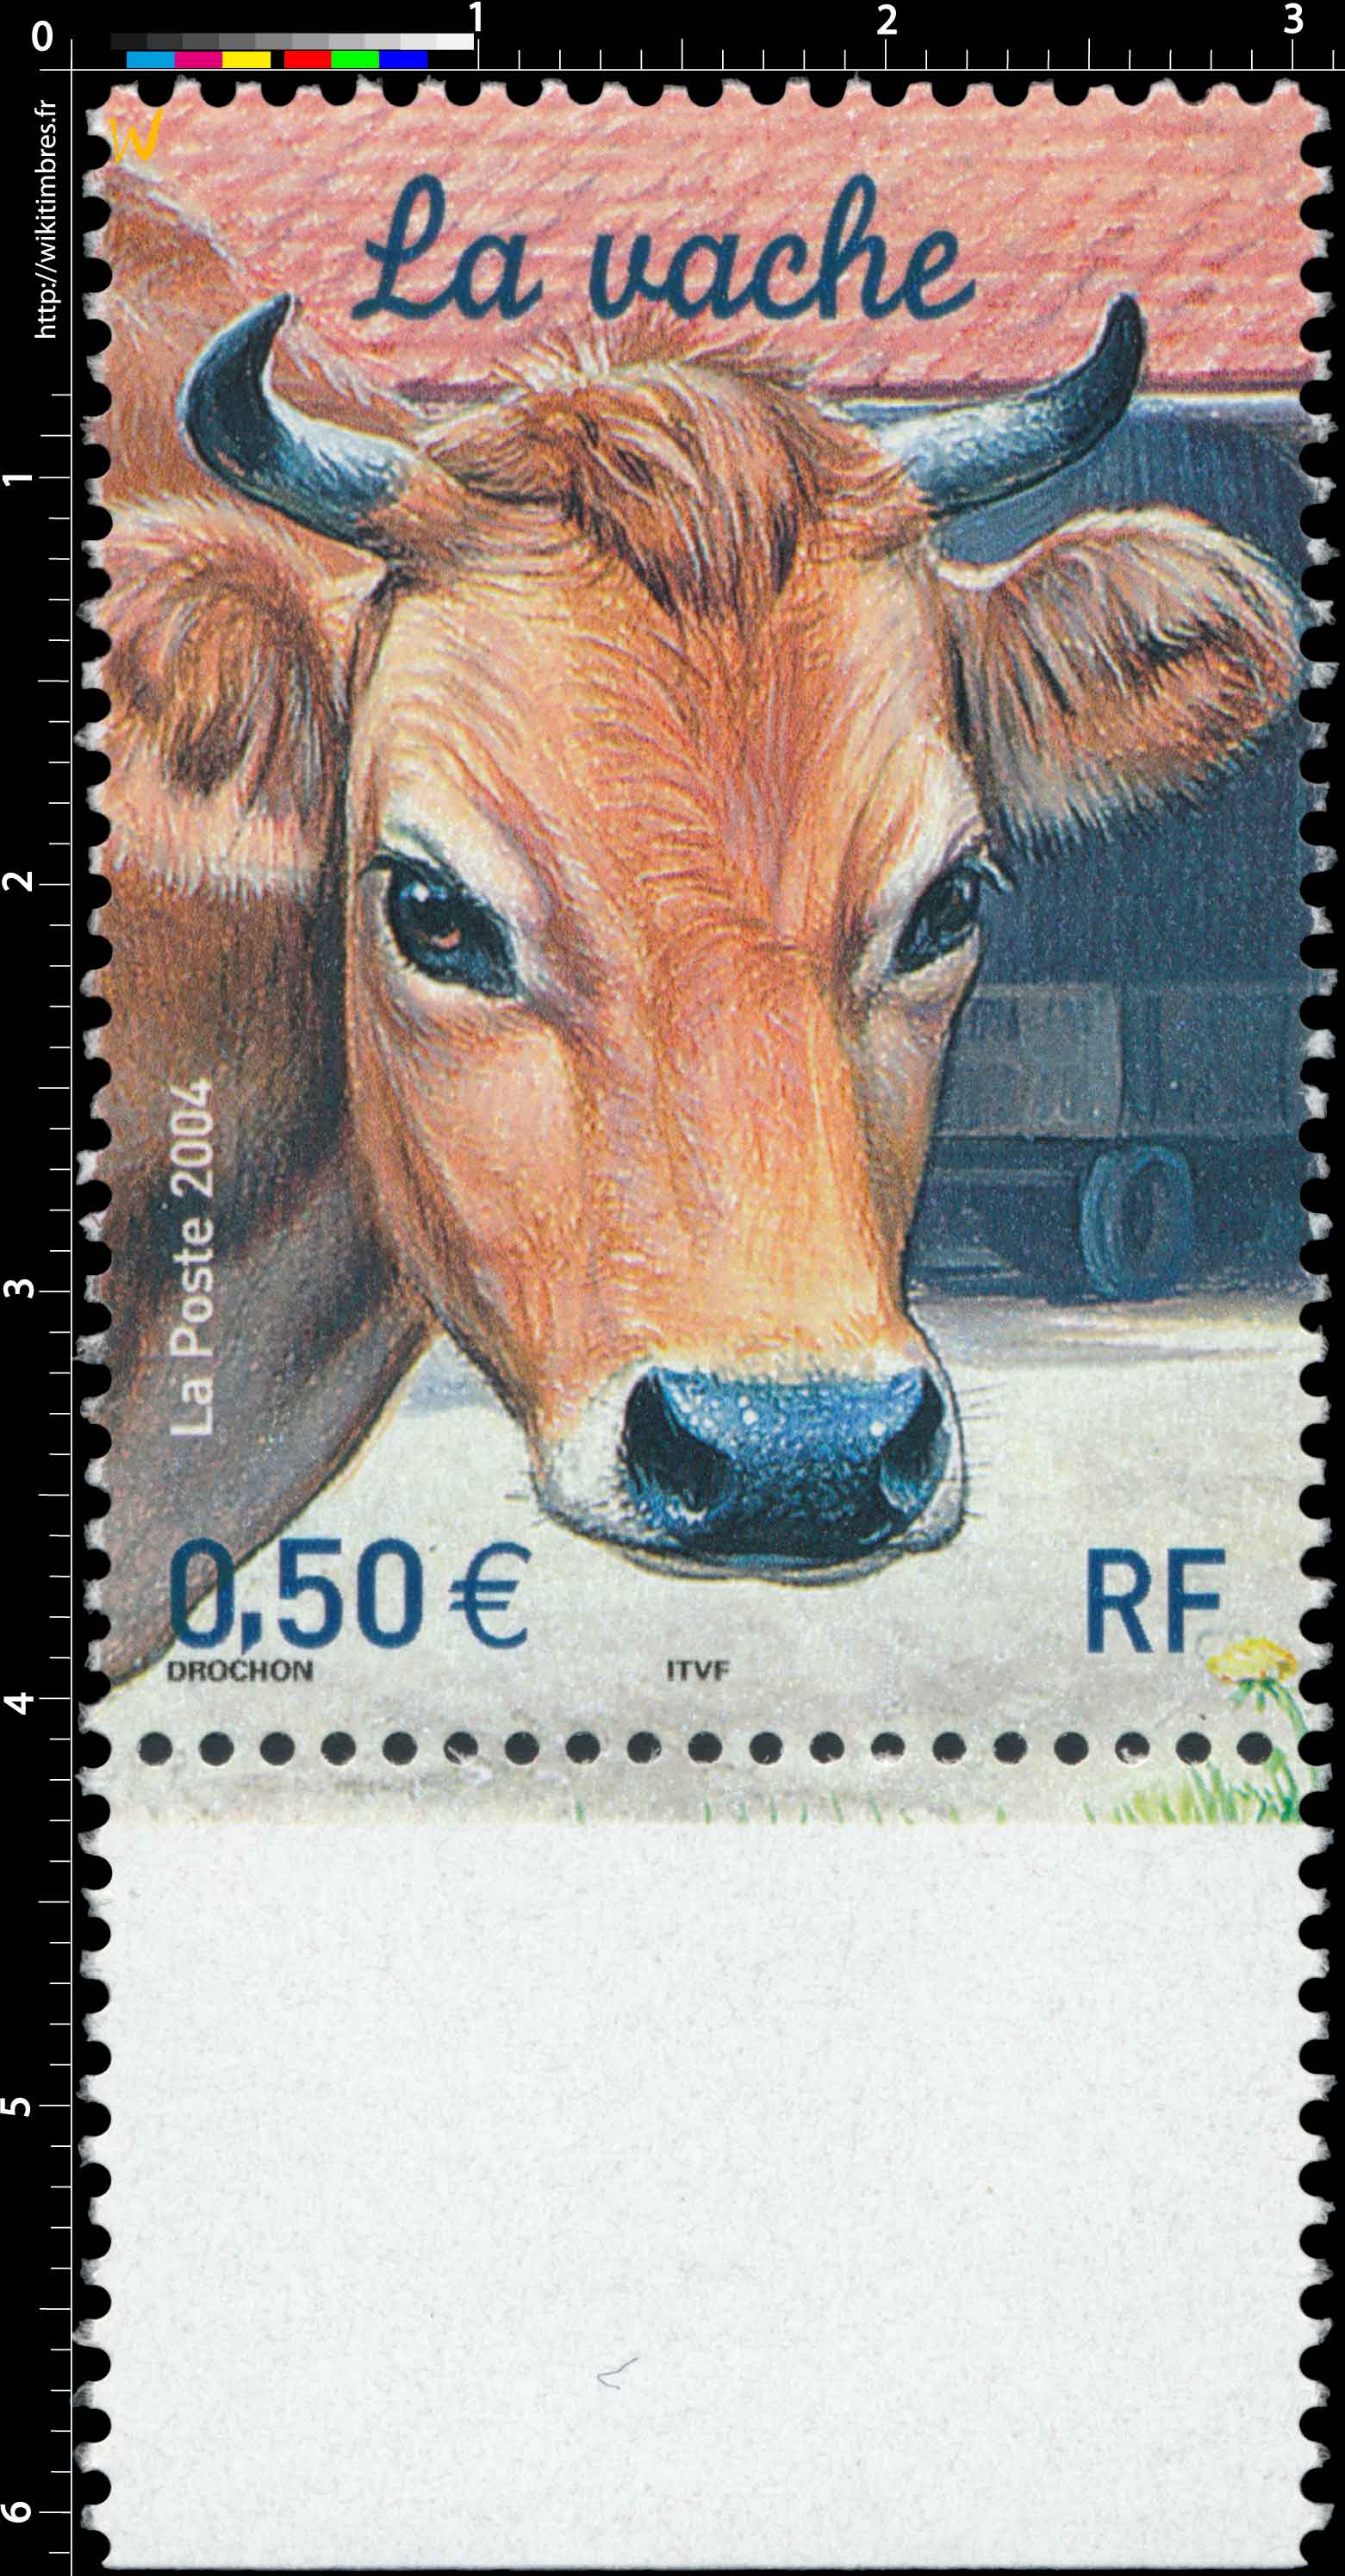 2004 La vache